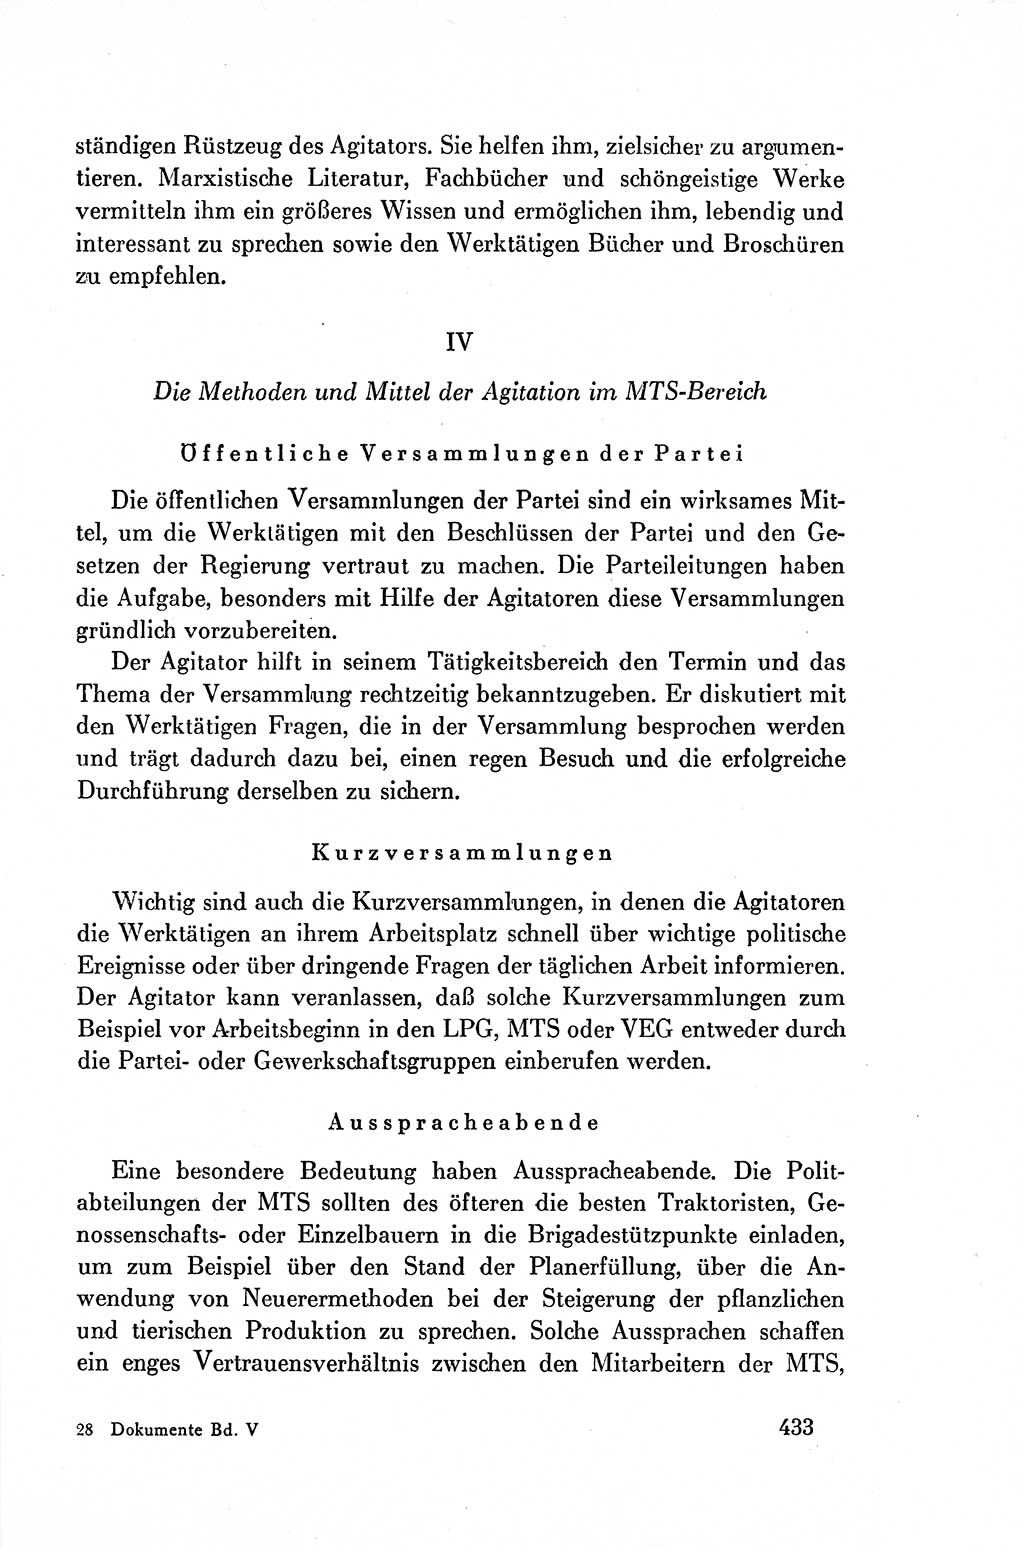 Dokumente der Sozialistischen Einheitspartei Deutschlands (SED) [Deutsche Demokratische Republik (DDR)] 1954-1955, Seite 433 (Dok. SED DDR 1954-1955, S. 433)